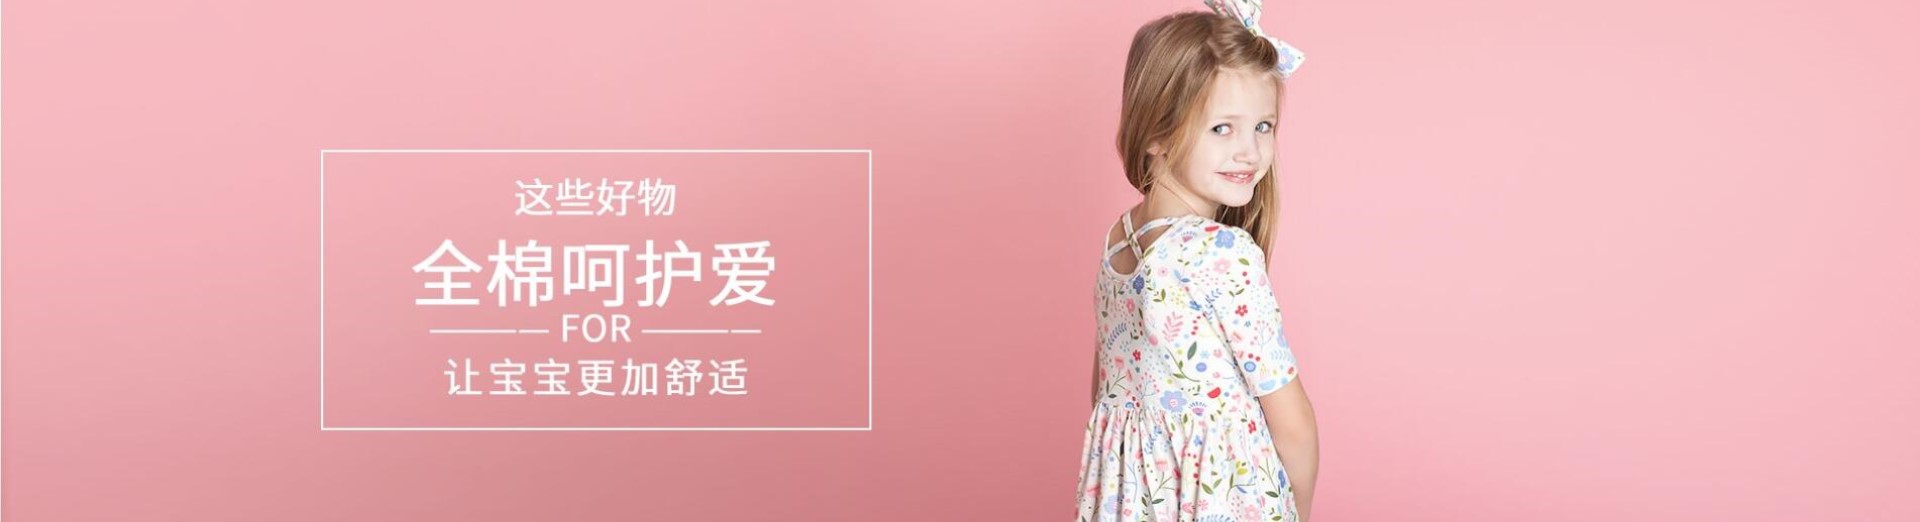 儿童服装公司响应式网站模板案例